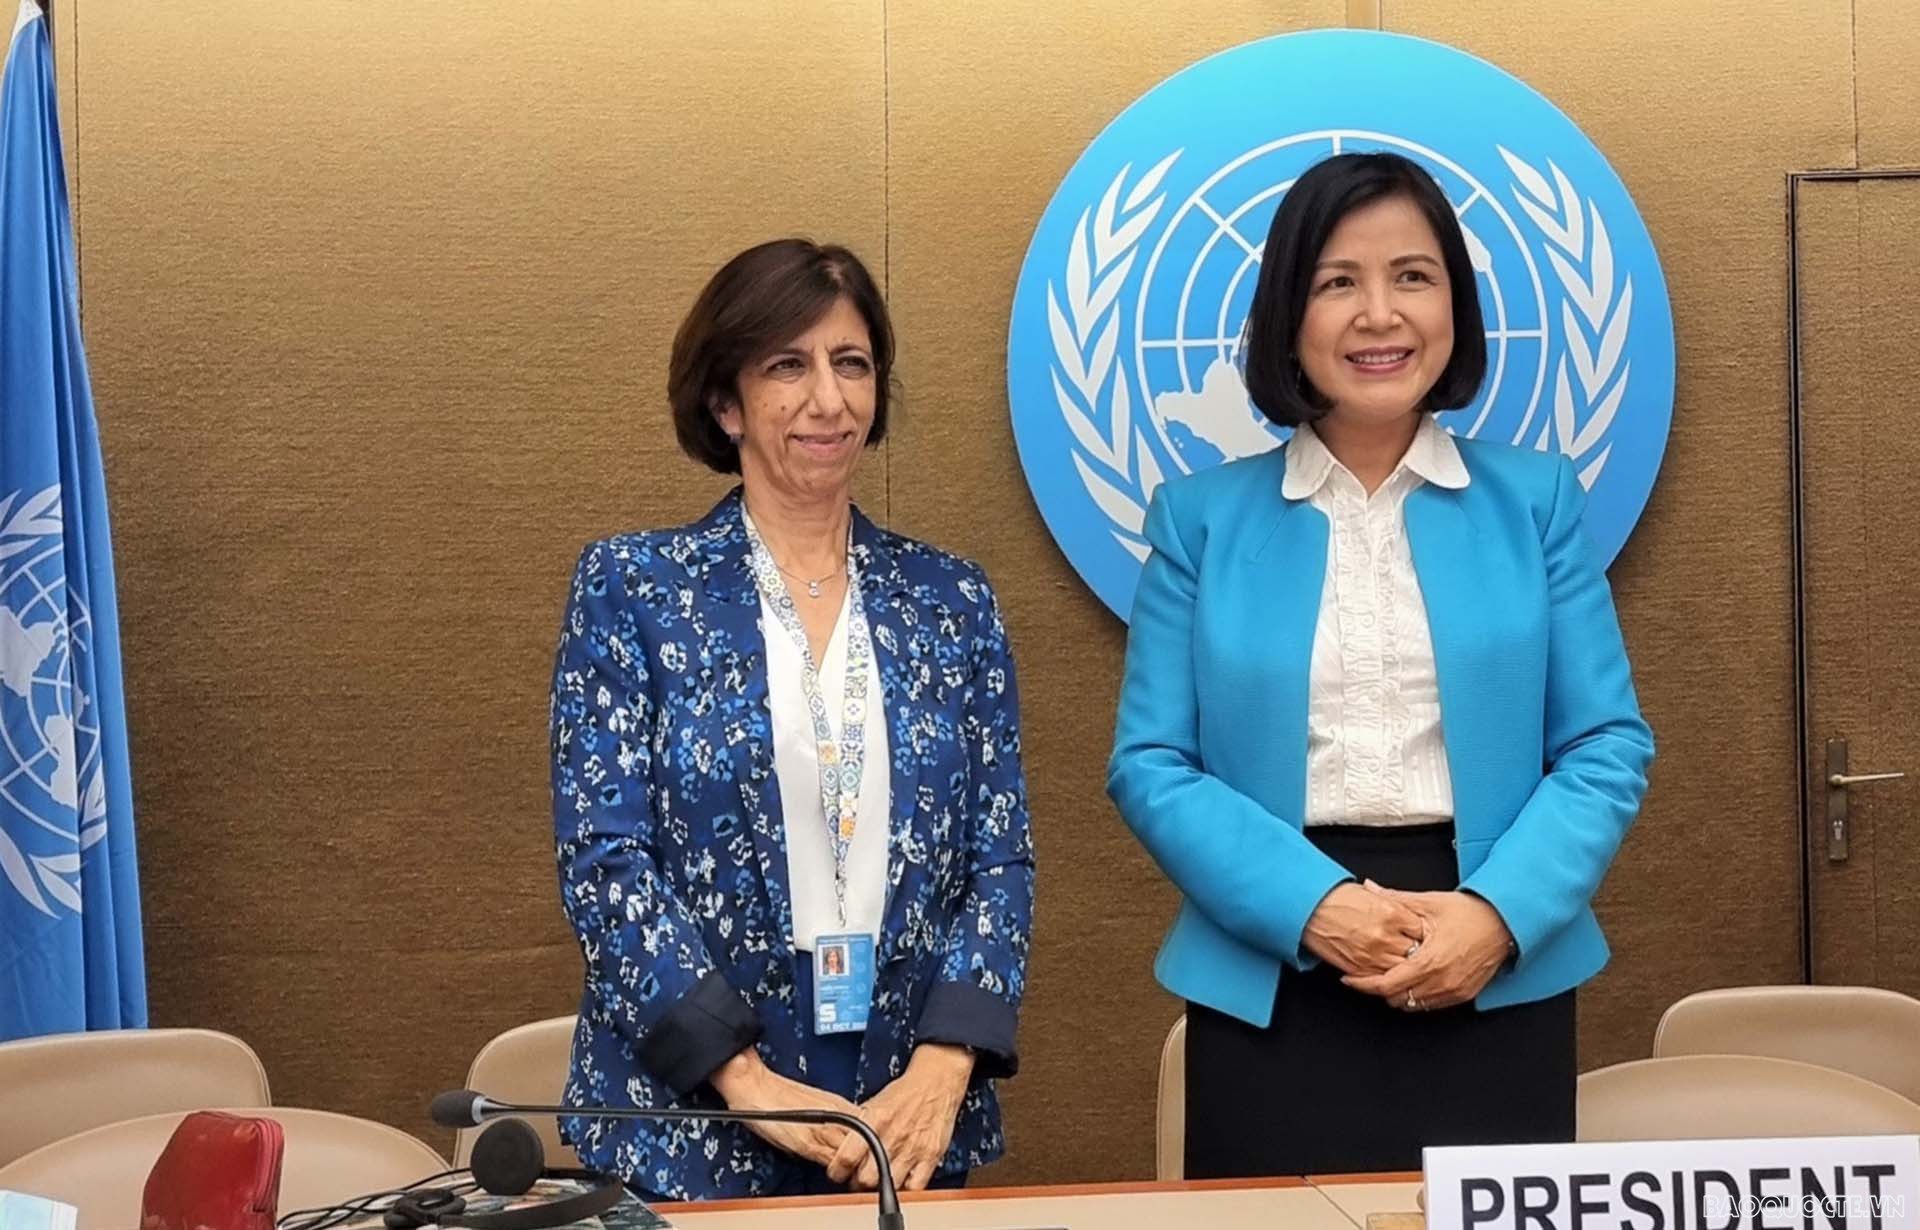 Đại sứ Lê Thị Tuyết Mai, chủ trì Phiên họp sáng 26/7 và Bà Teresa Moreira, Trưởng bộ phận cạnh tranh và chính sách người tiêu dùng của UNCTAD.